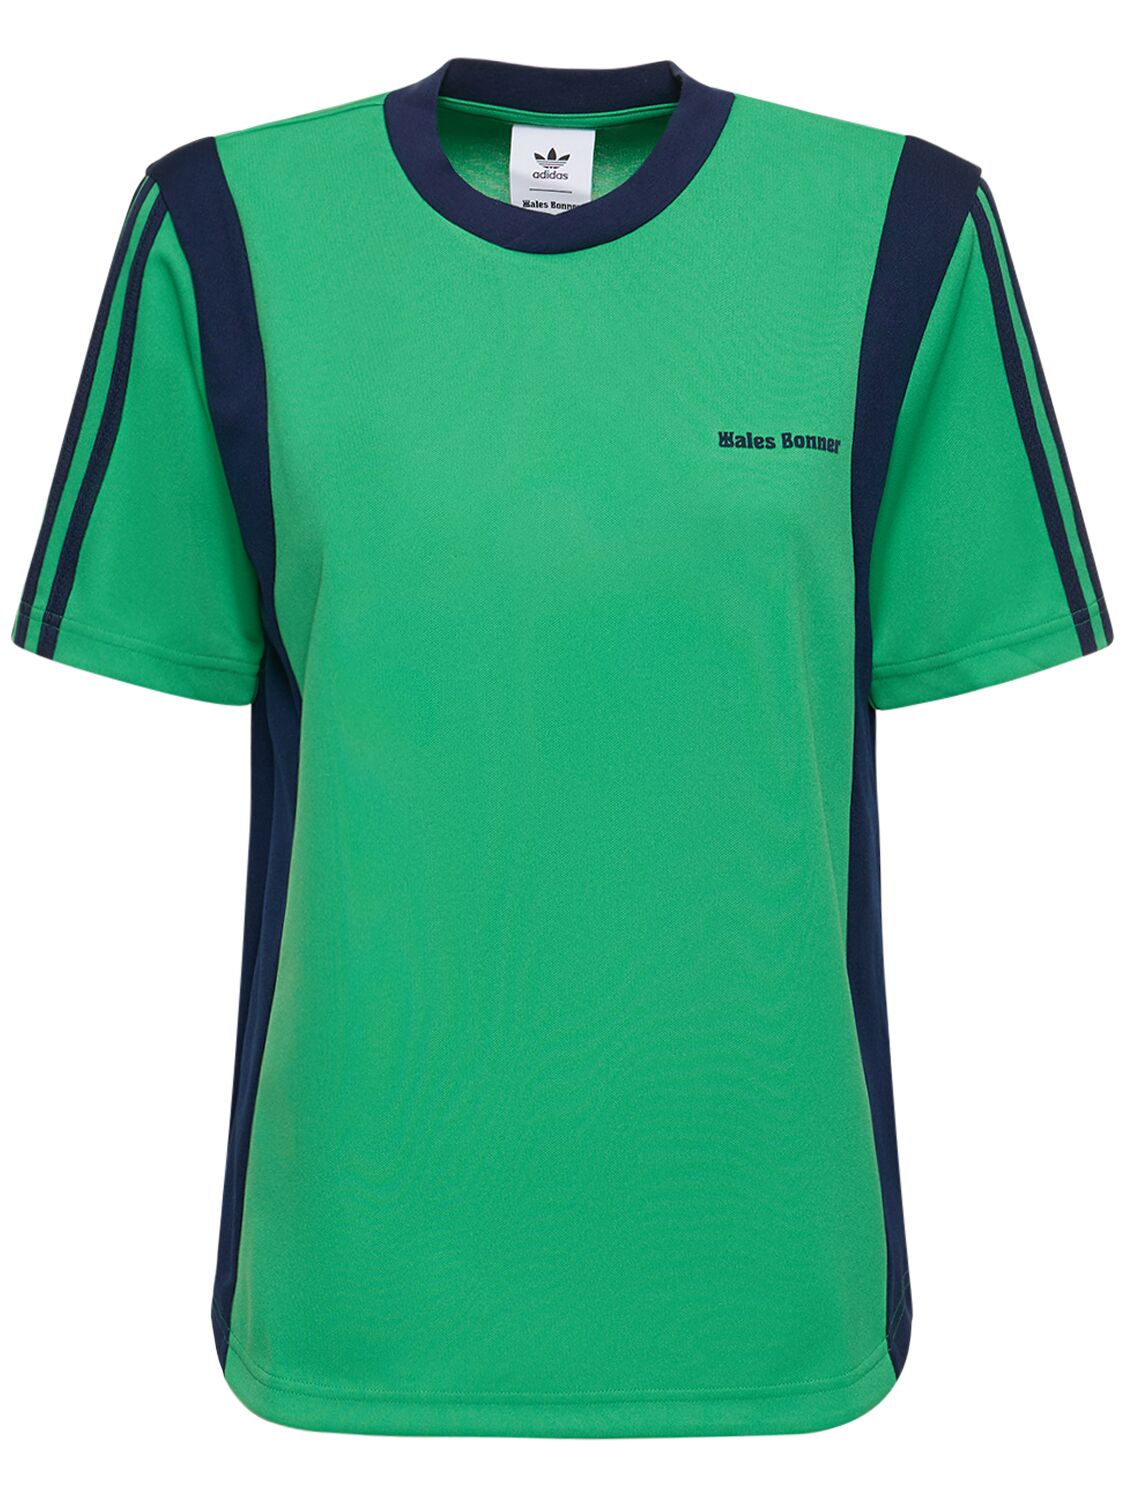 ADIDAS ORIGINALS WALES BONNER科技织物足球T恤